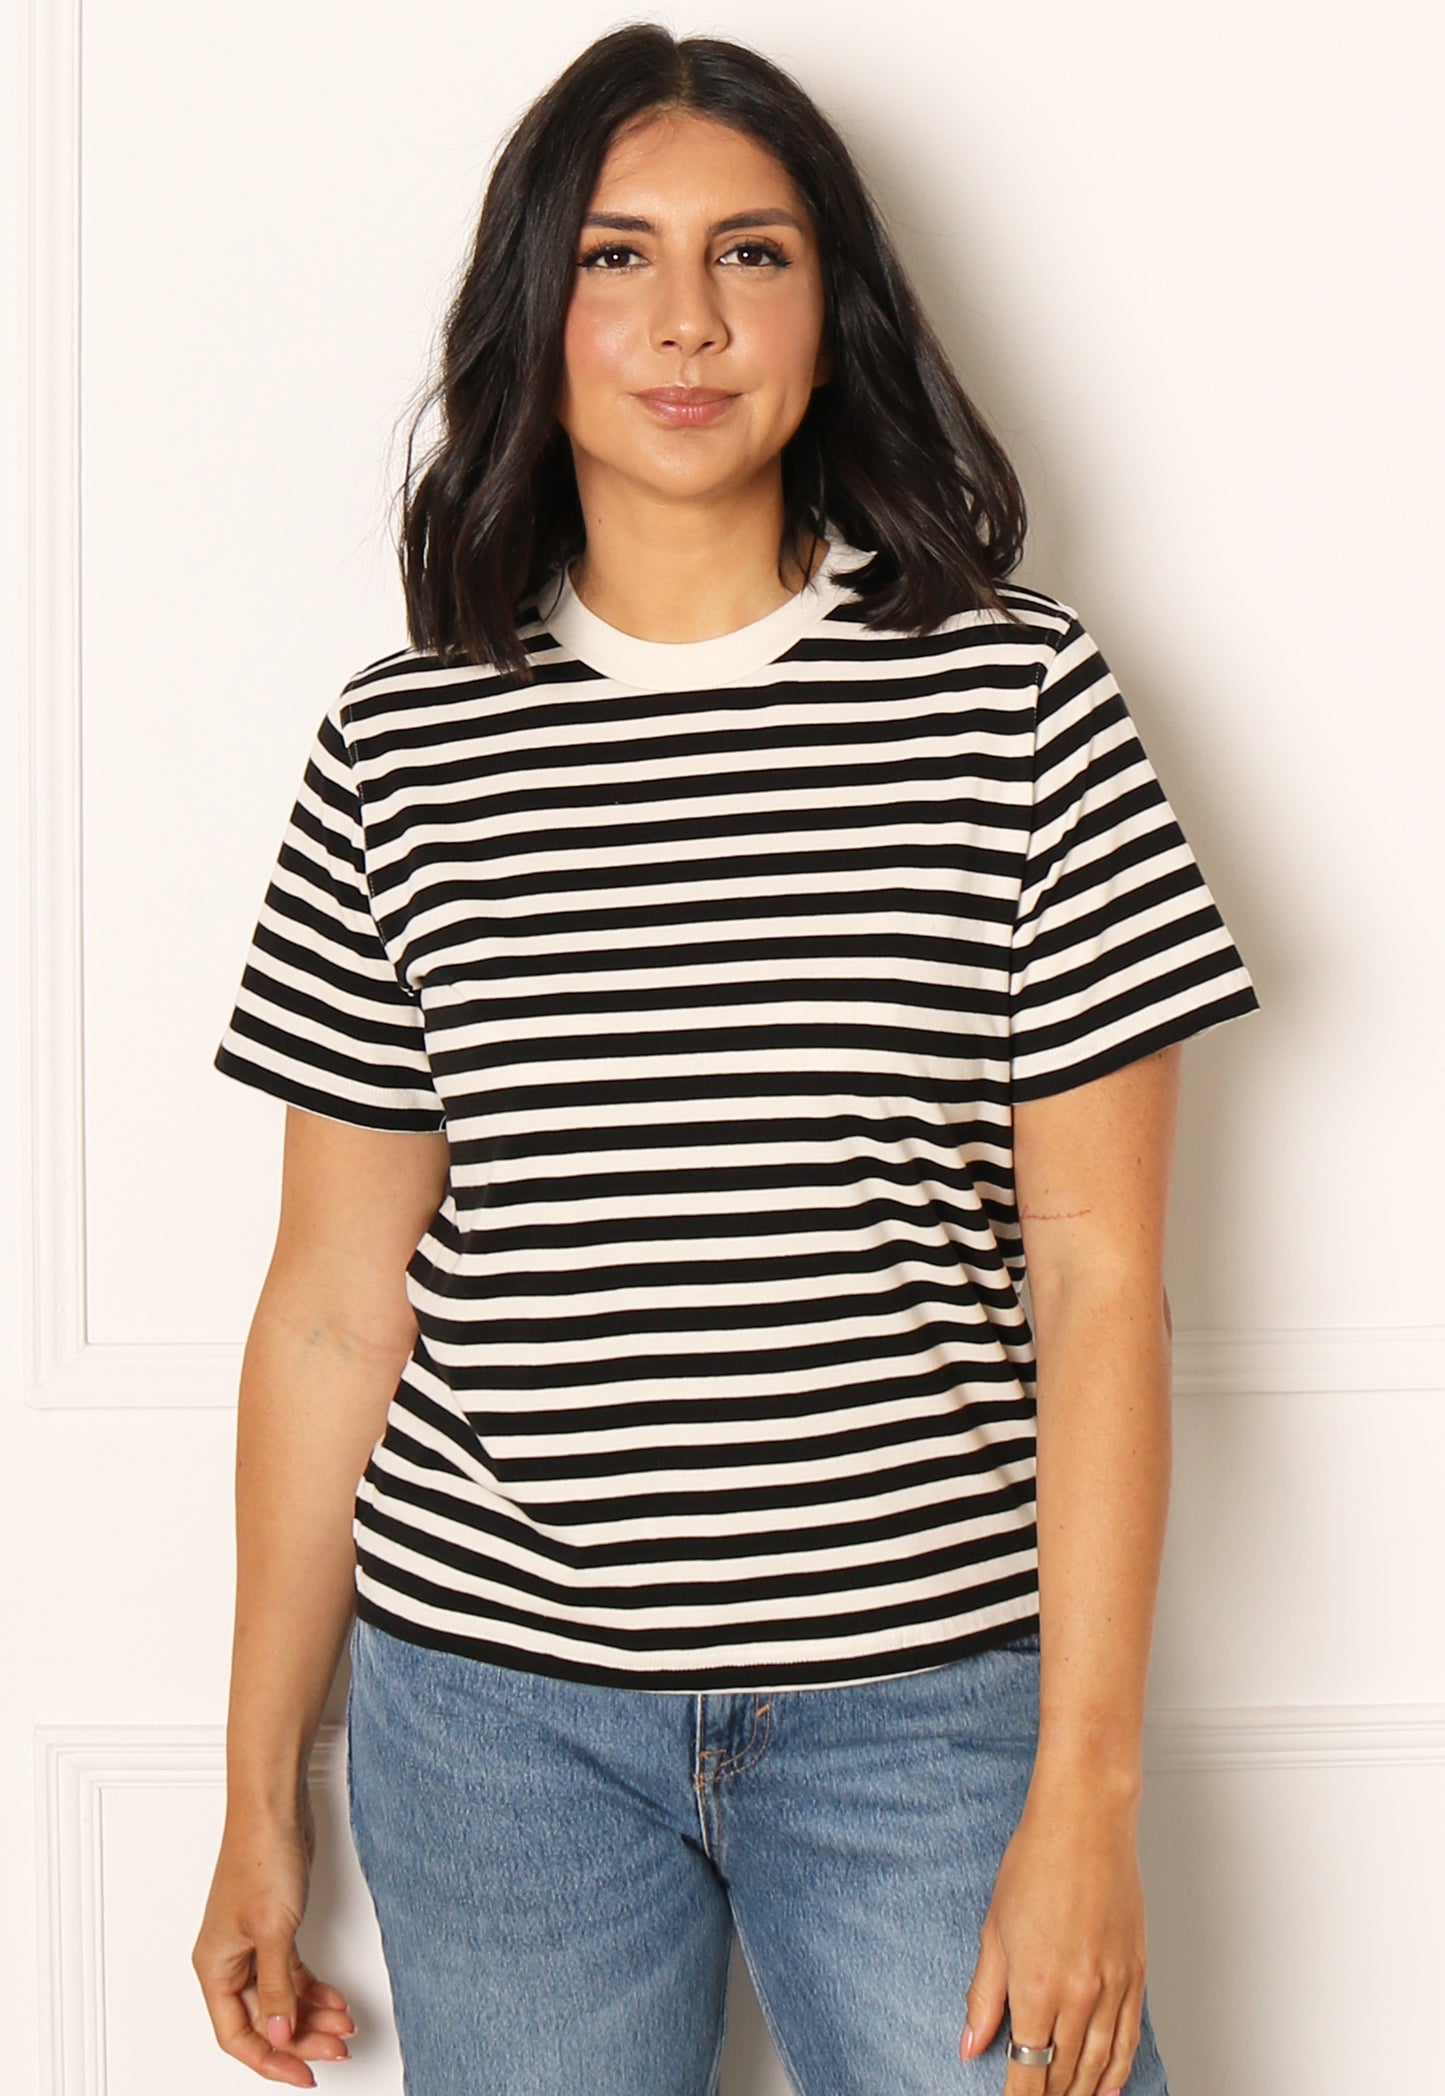 NUR Baumwoll-T-Shirt mit entspannten Streifen und kurzen Ärmeln in Schwarz und Weiß – One Nation Clothing